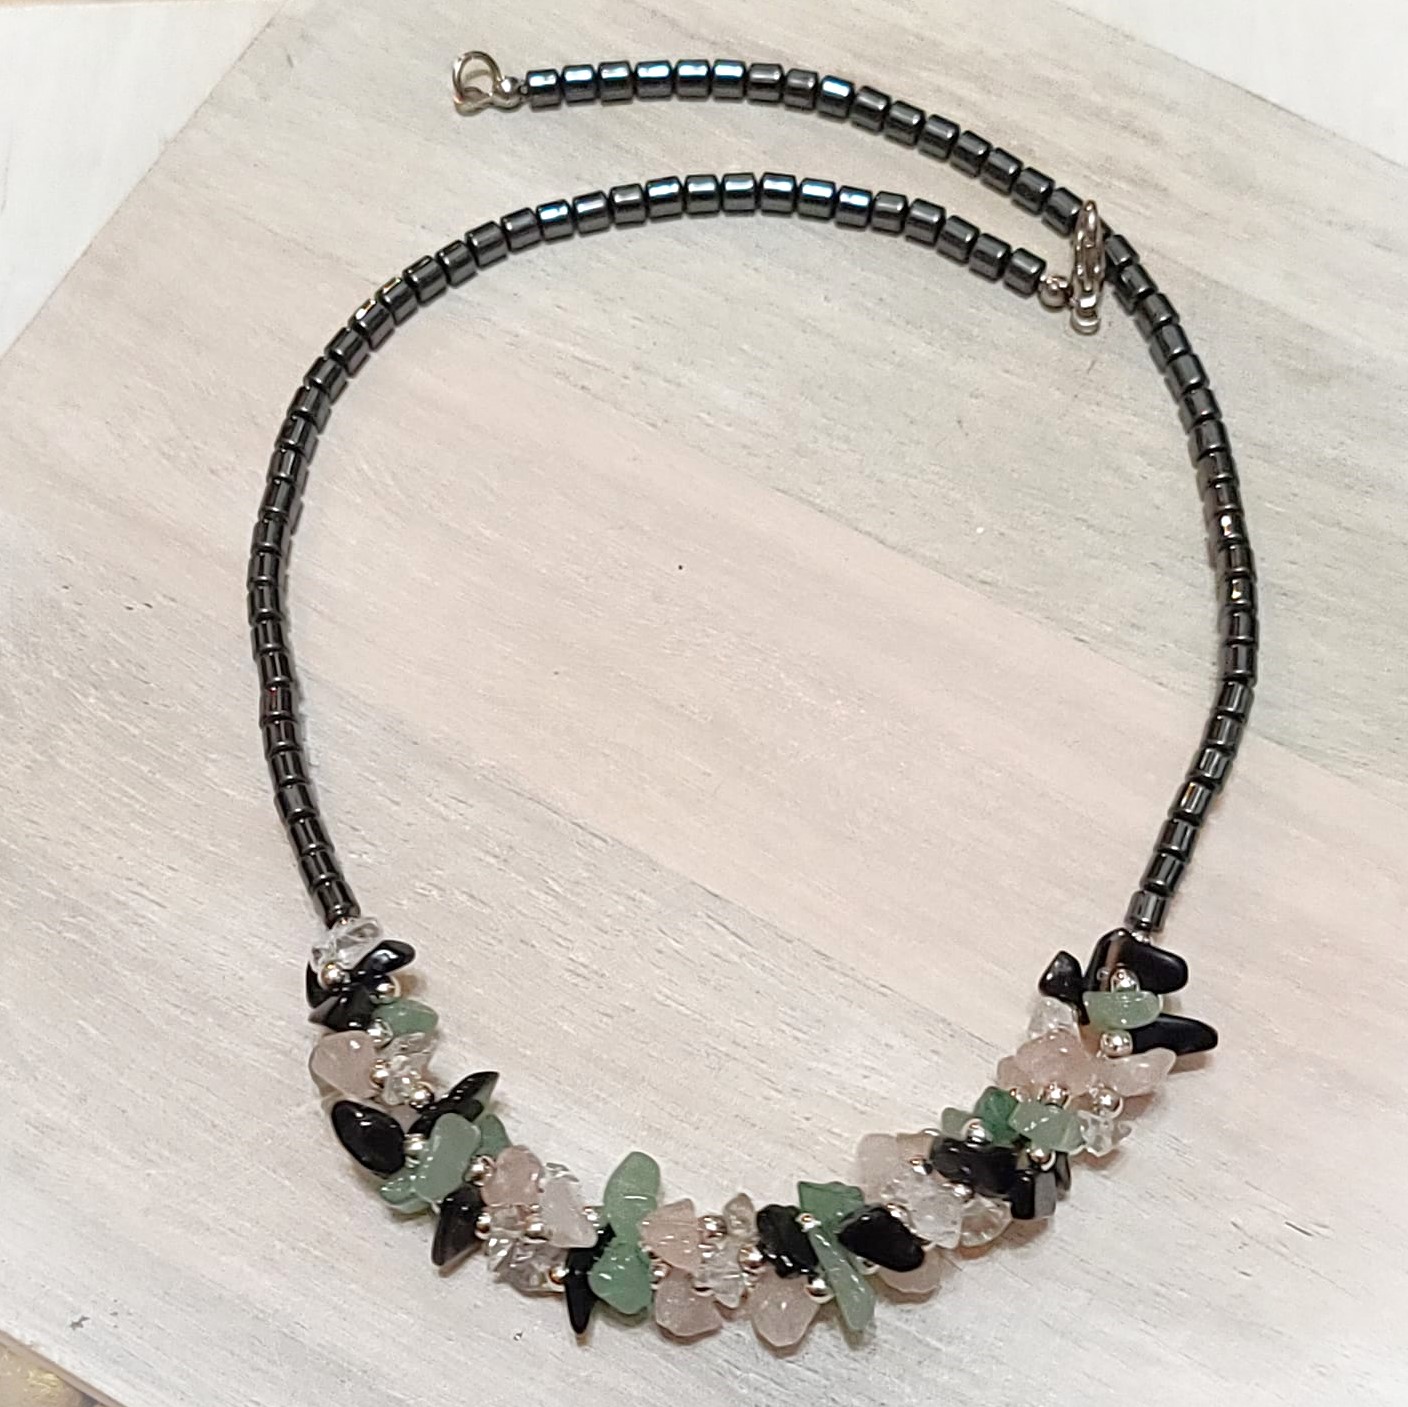 Hematite & Quartz Gemstones Beads Necklace 18"